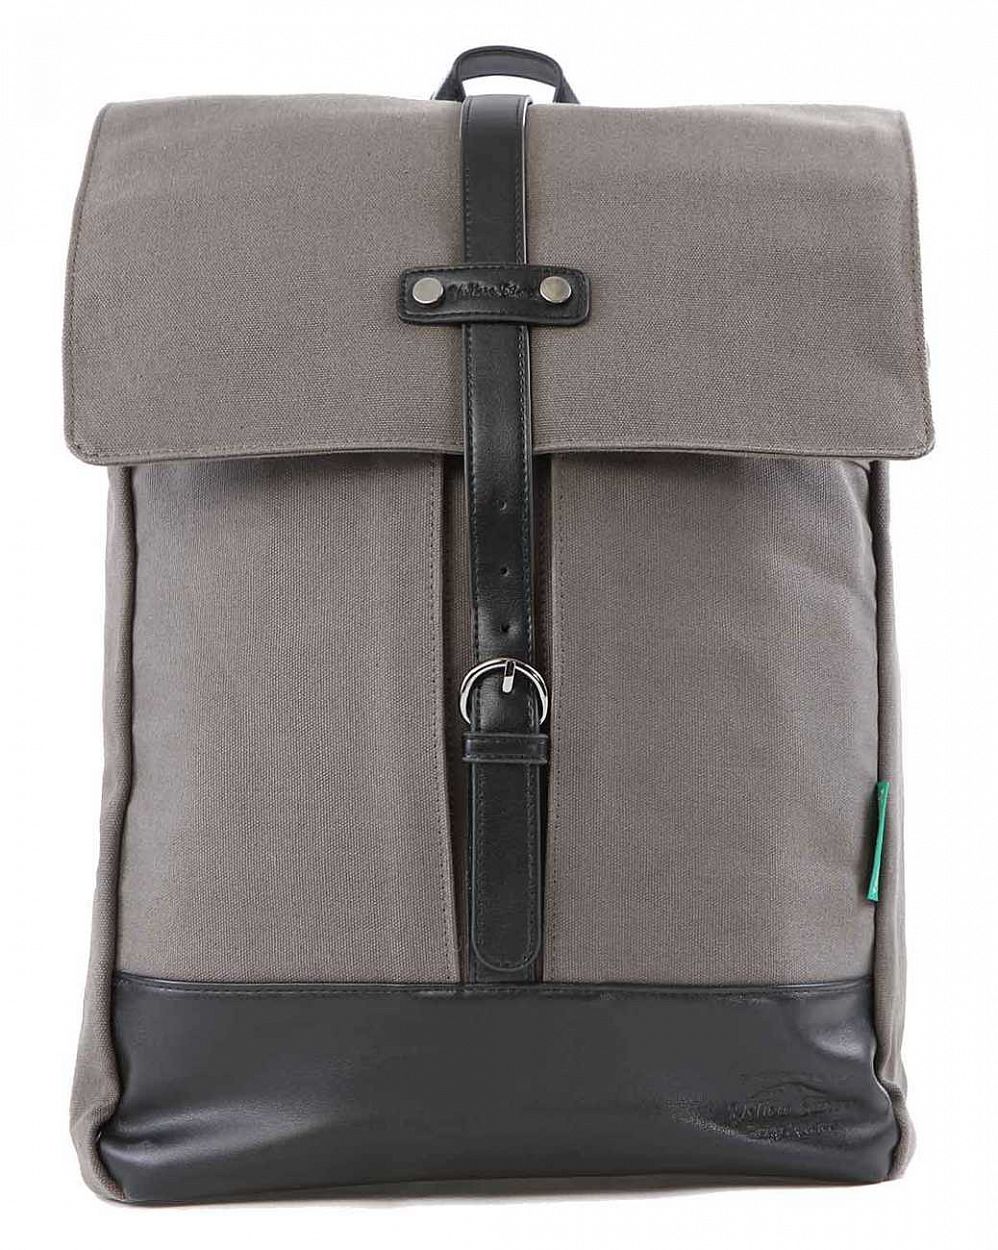 Рюкзак тканевый водостойкий с отделом для 15 ноутбука YellowStone 9007 Grey отзывы